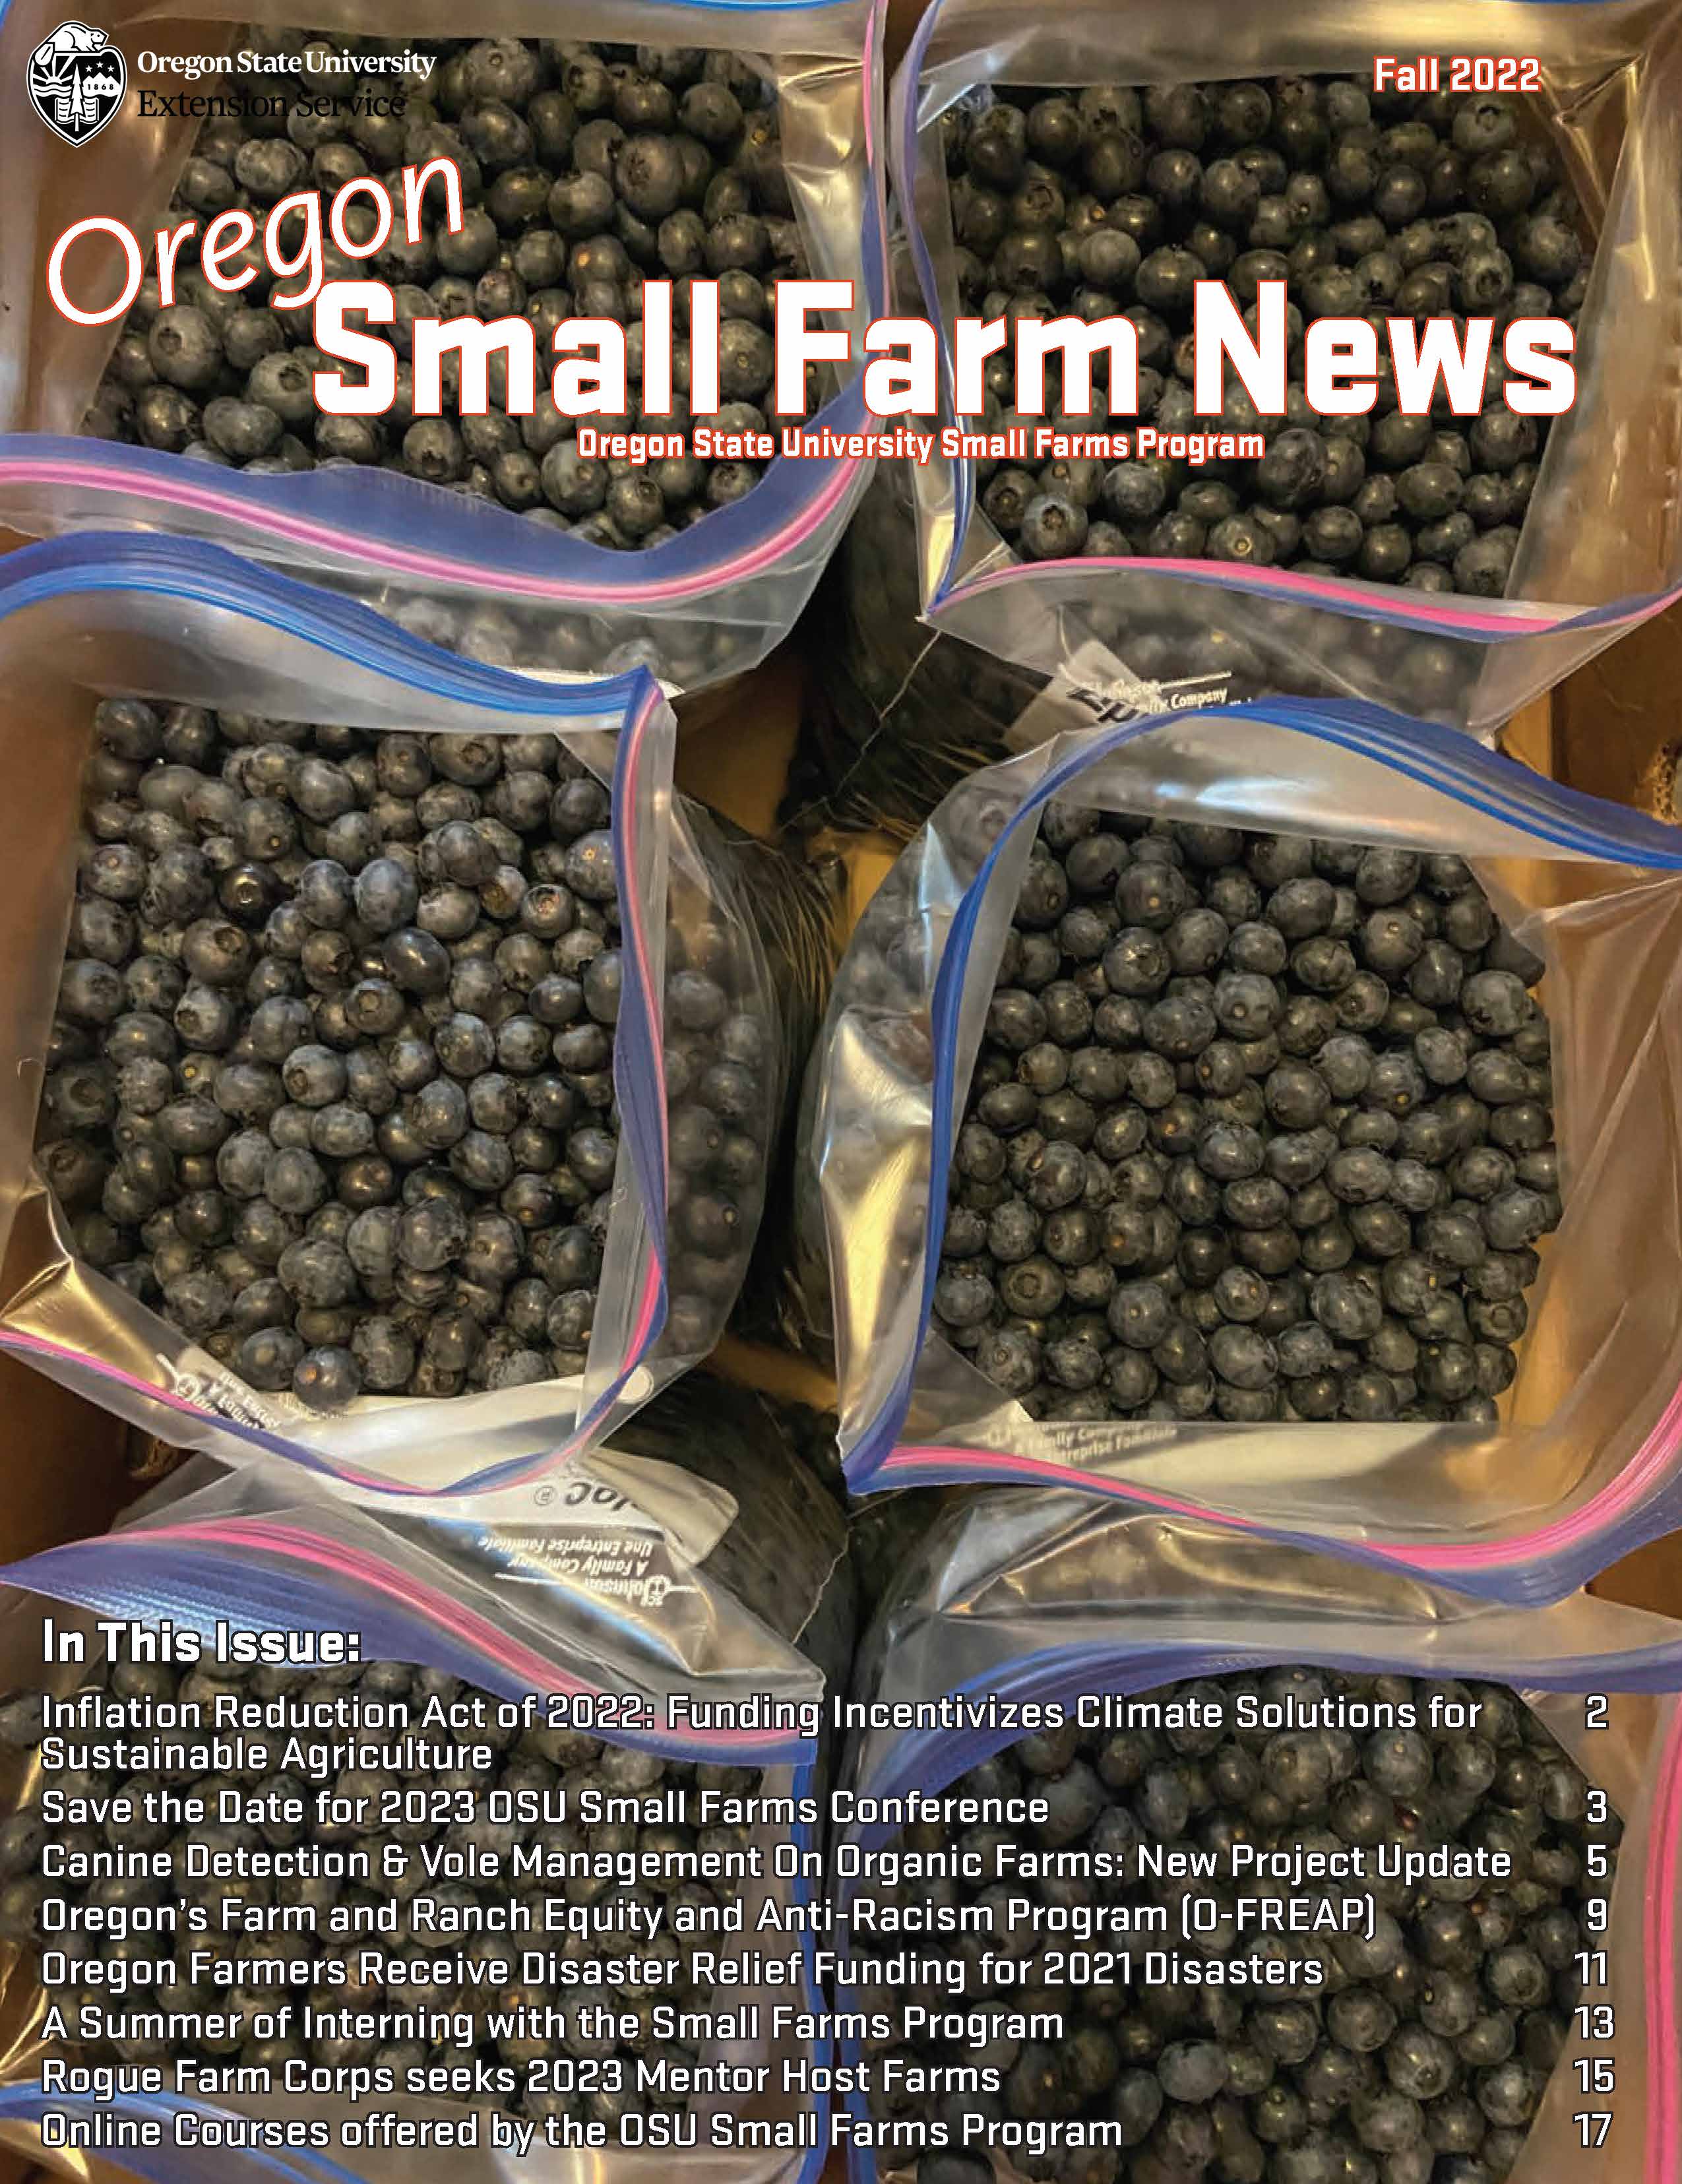 Newsletter Cover - photo of ziploc bag full of blueberries